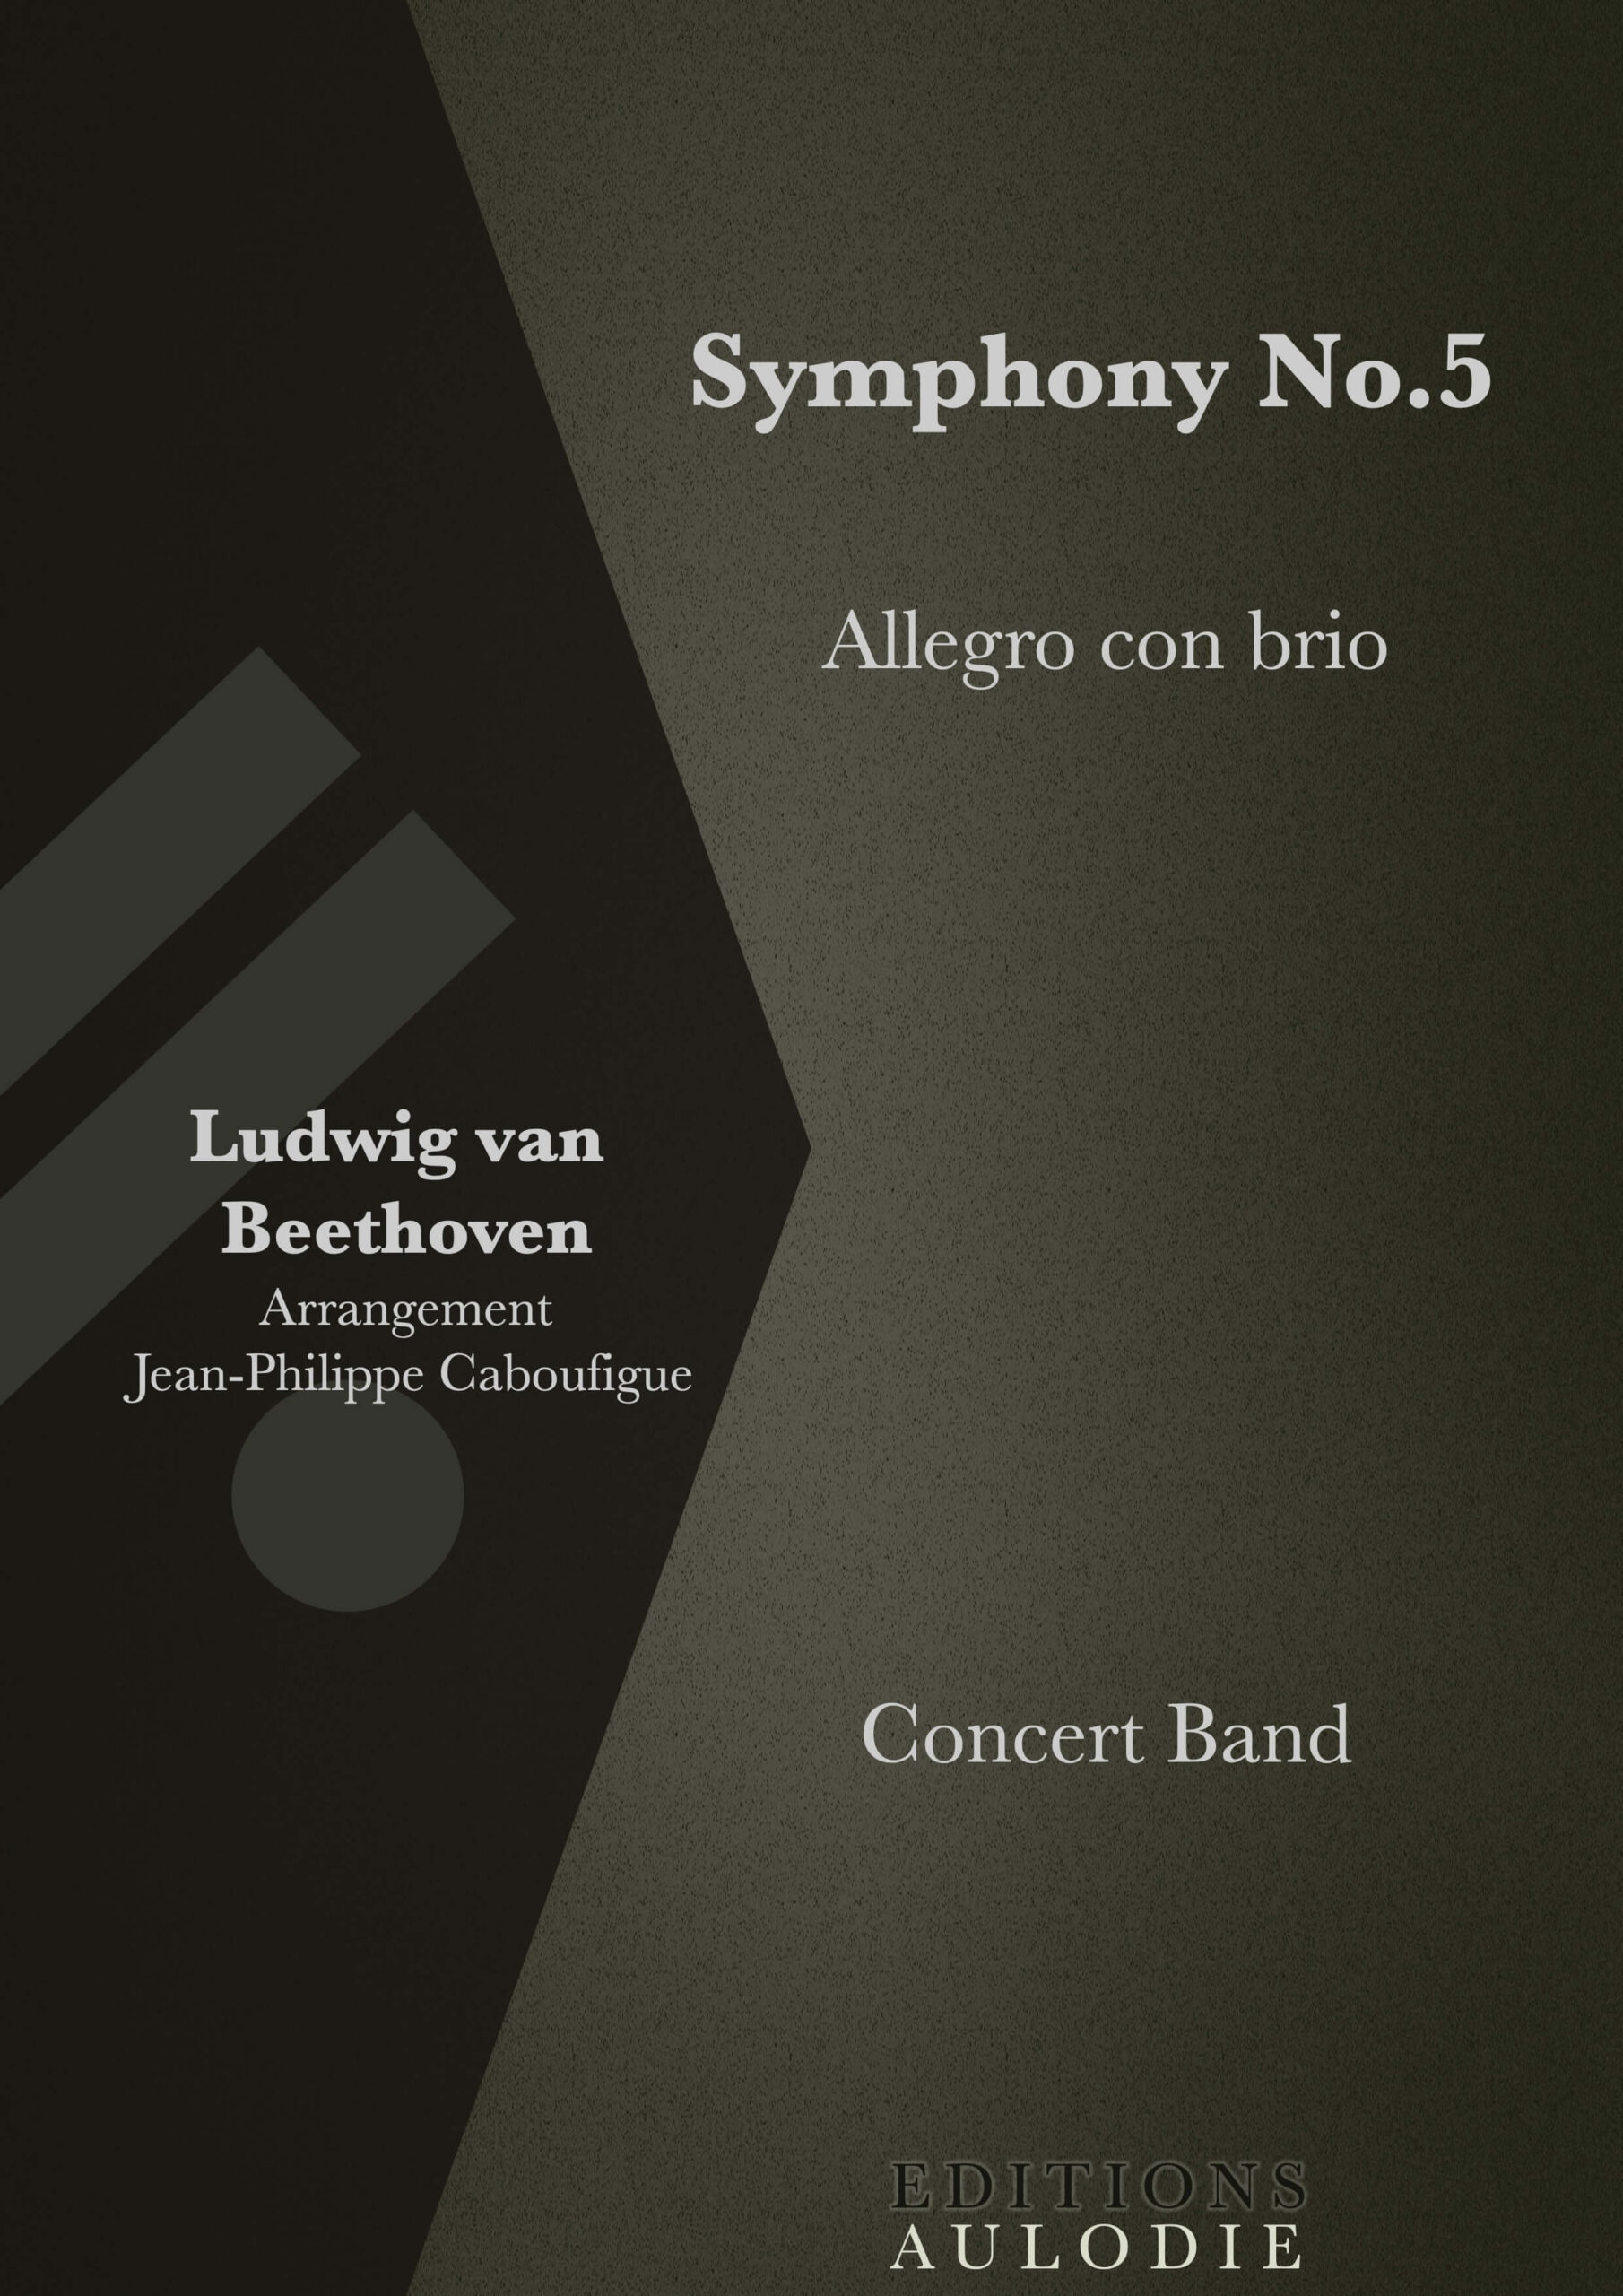 EA01015-Symphony_No5_Allegro_con_brio-Ludwig_van_Beethoven-Concert_Band